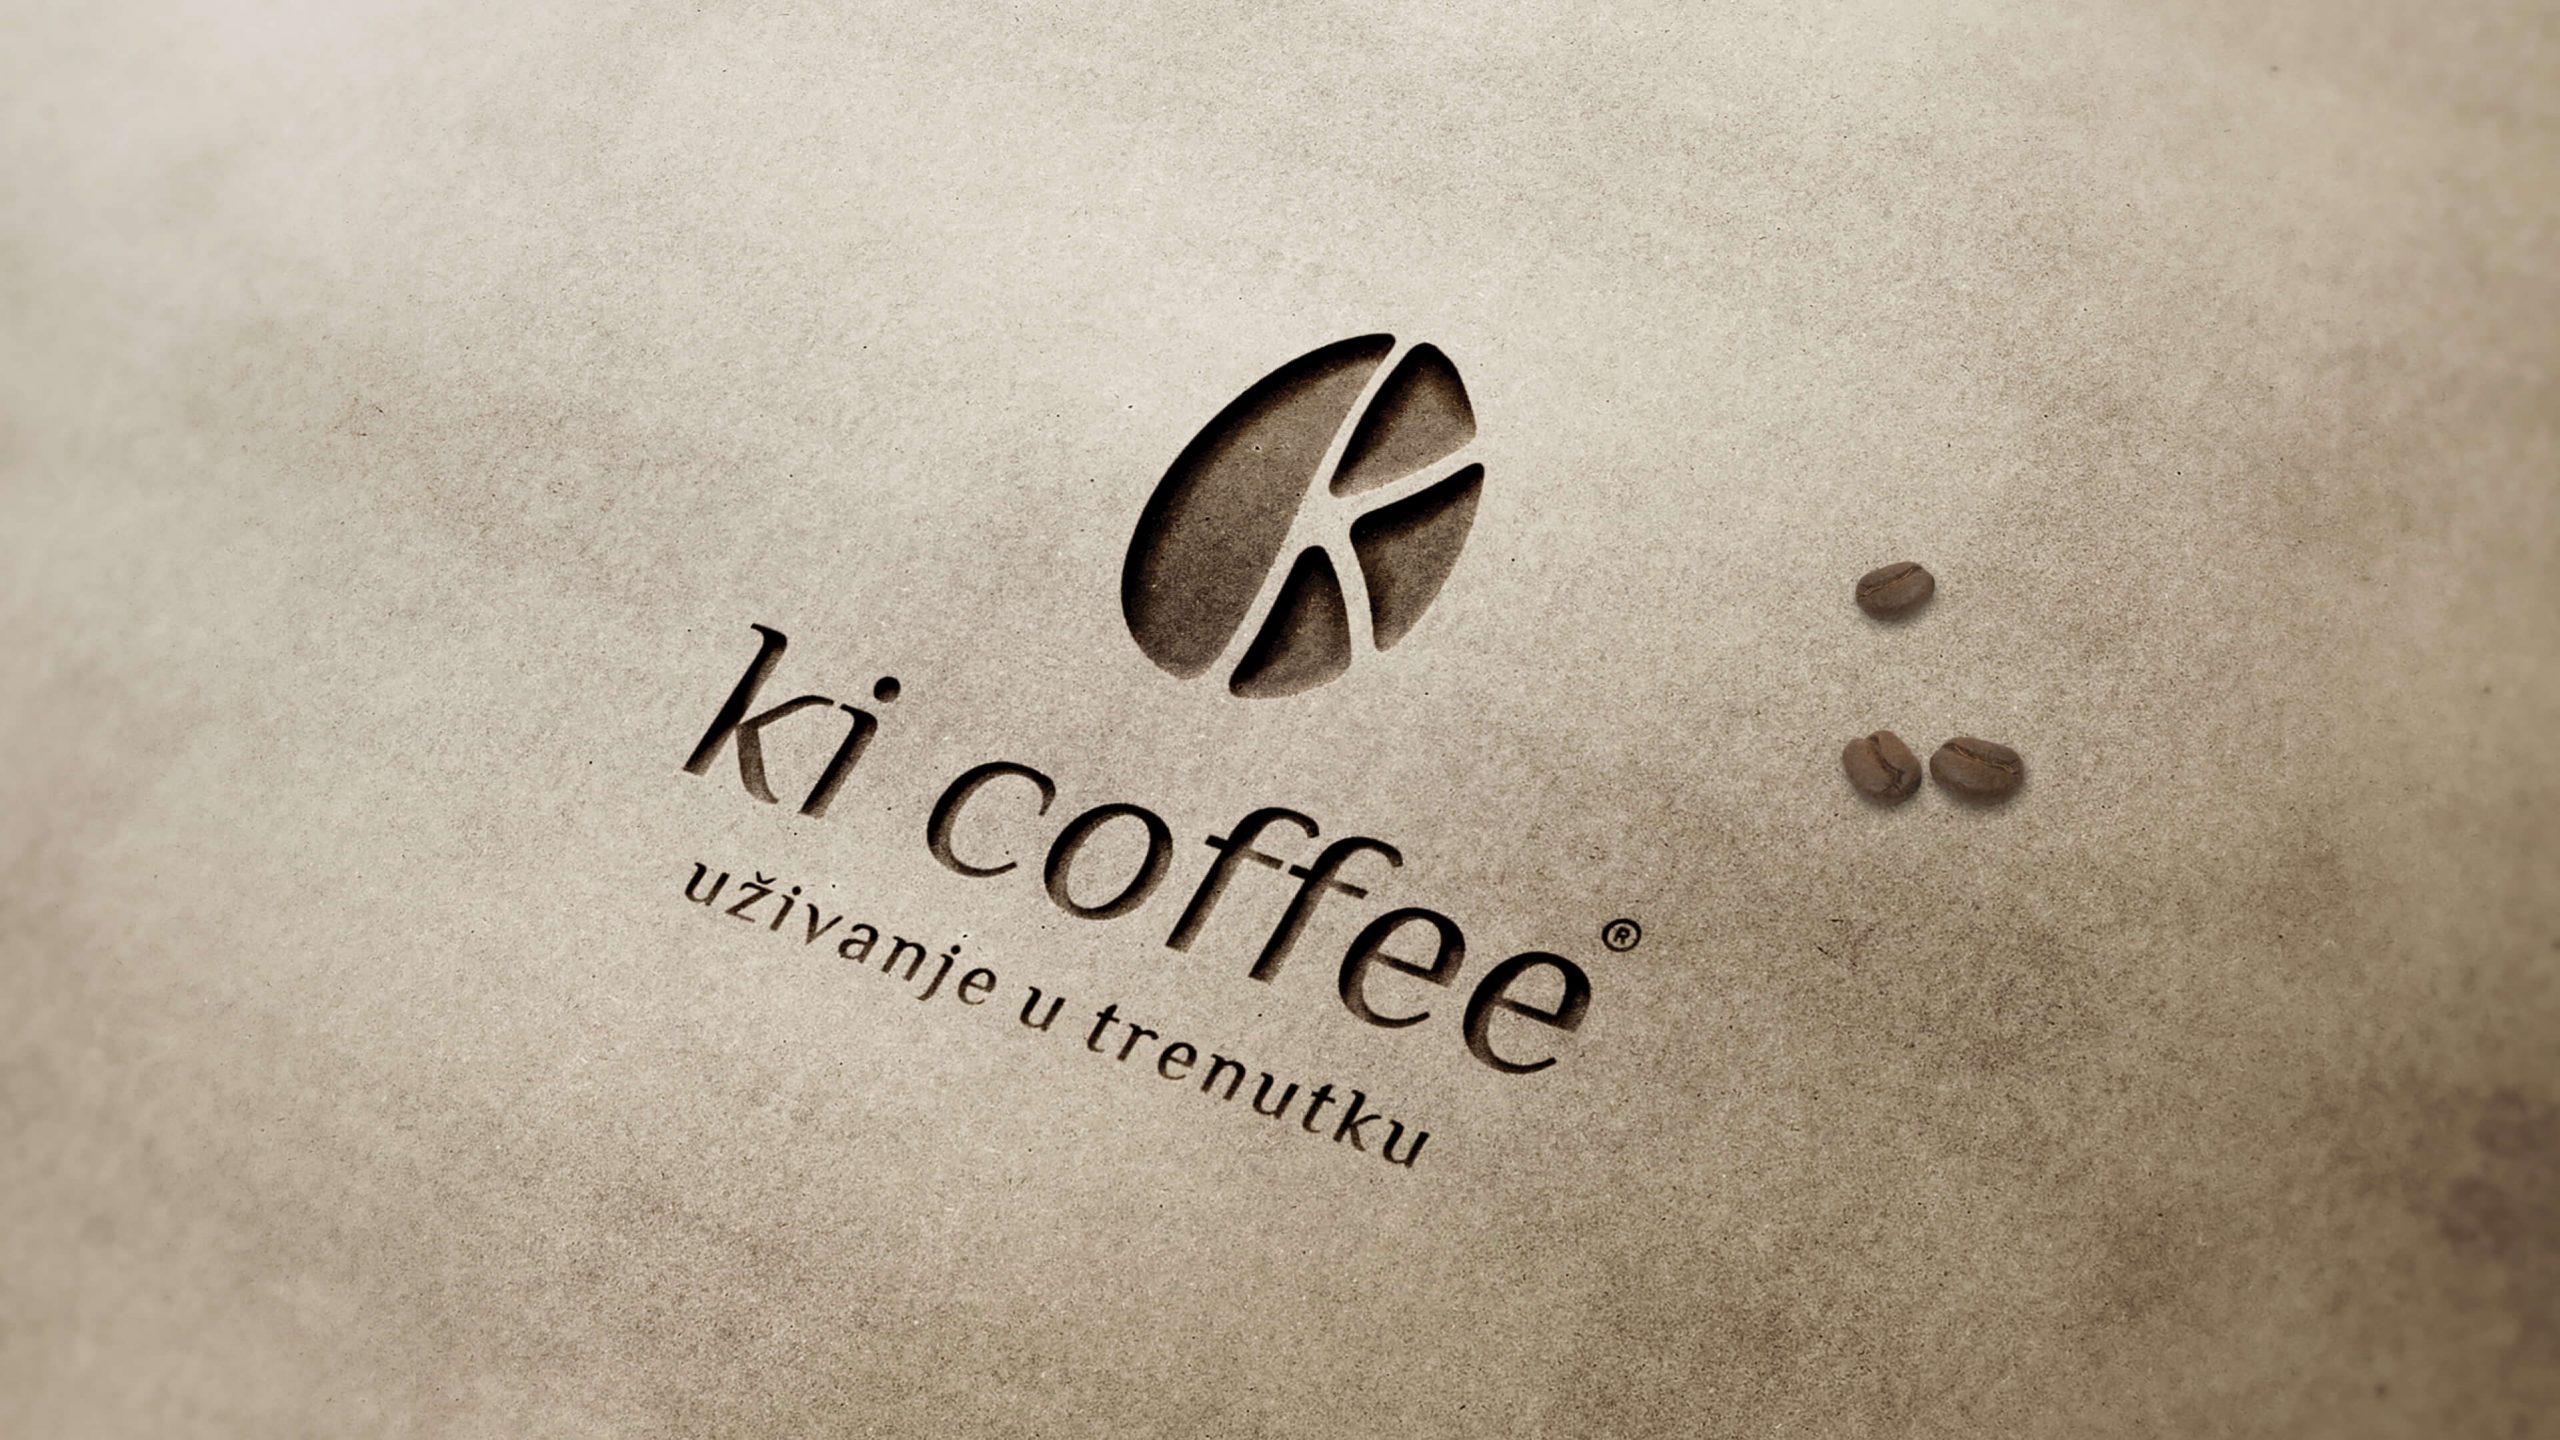 ki coffee